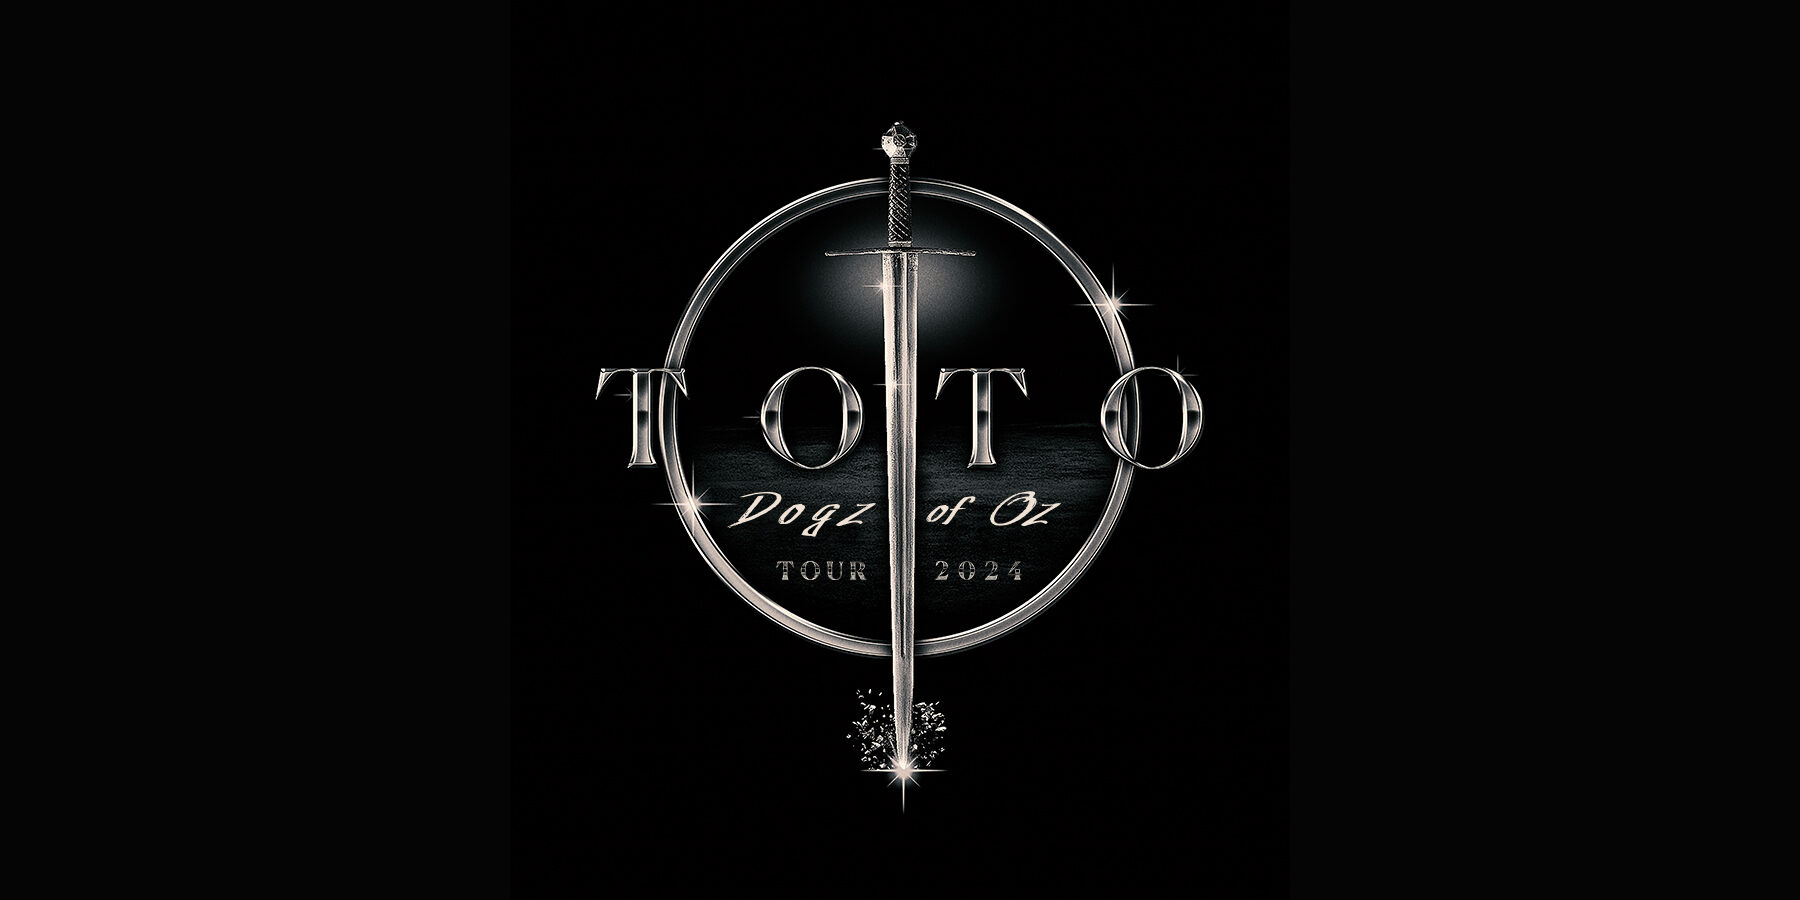 Toto Dogz of Oz Tour